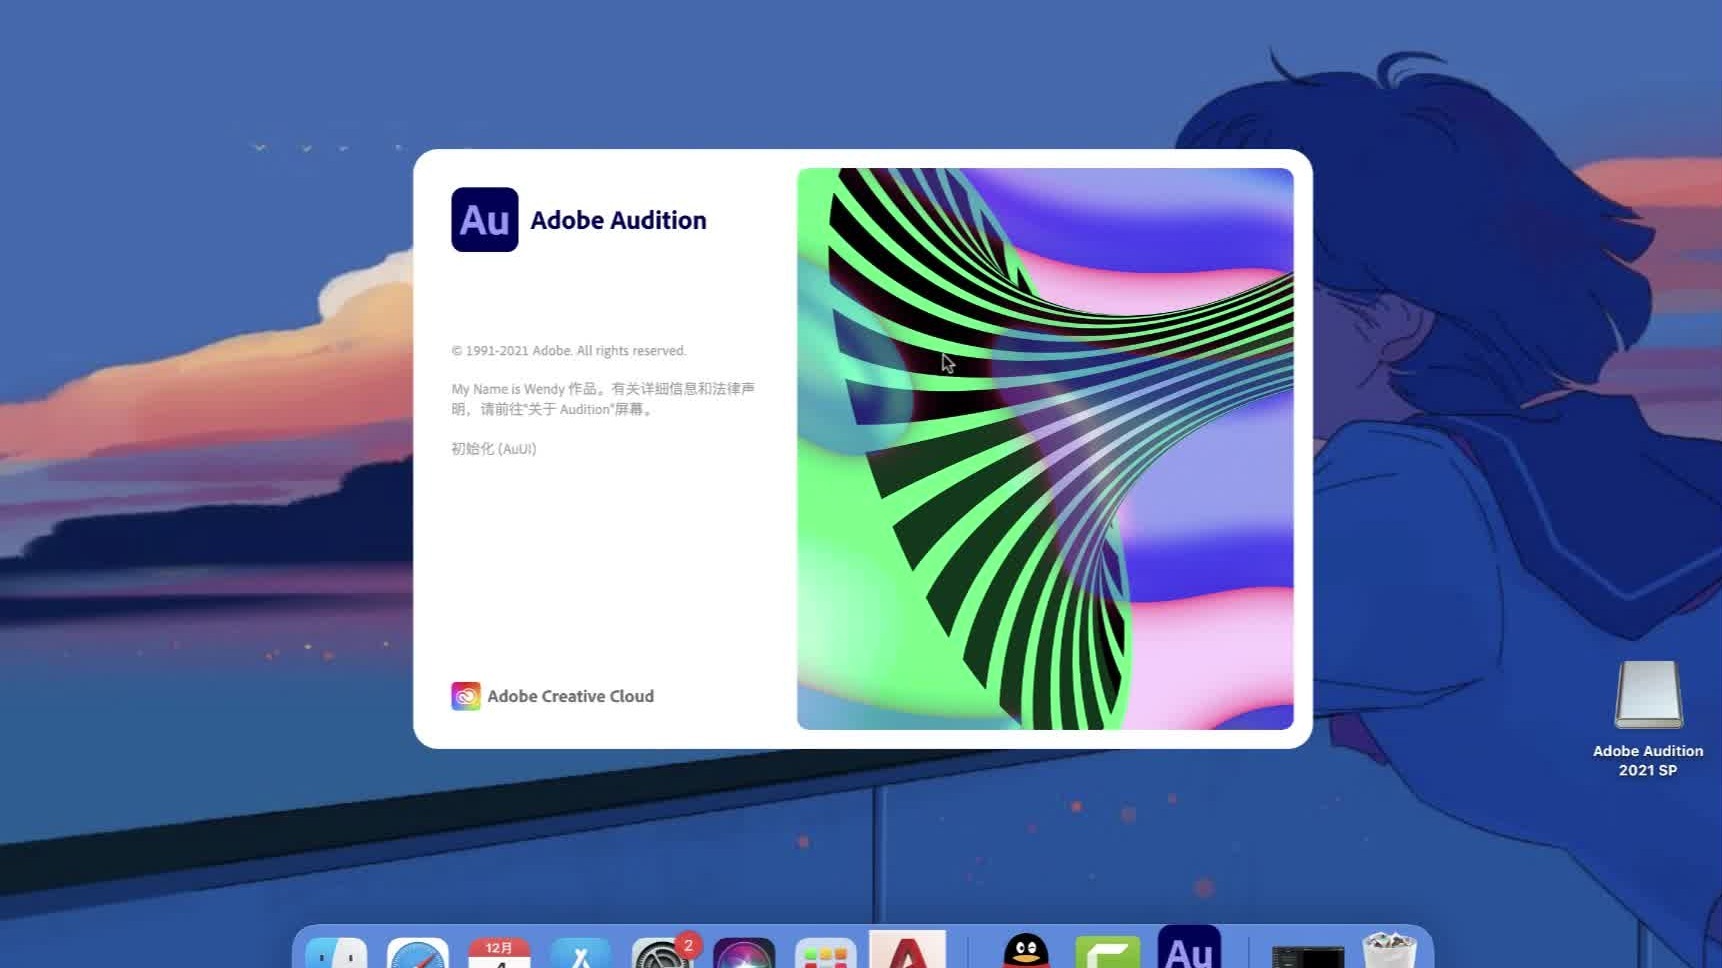 Adobe Audition 2021 M1 芯片版 v14.2.0 中文免激活版下载 Au音频编辑软件